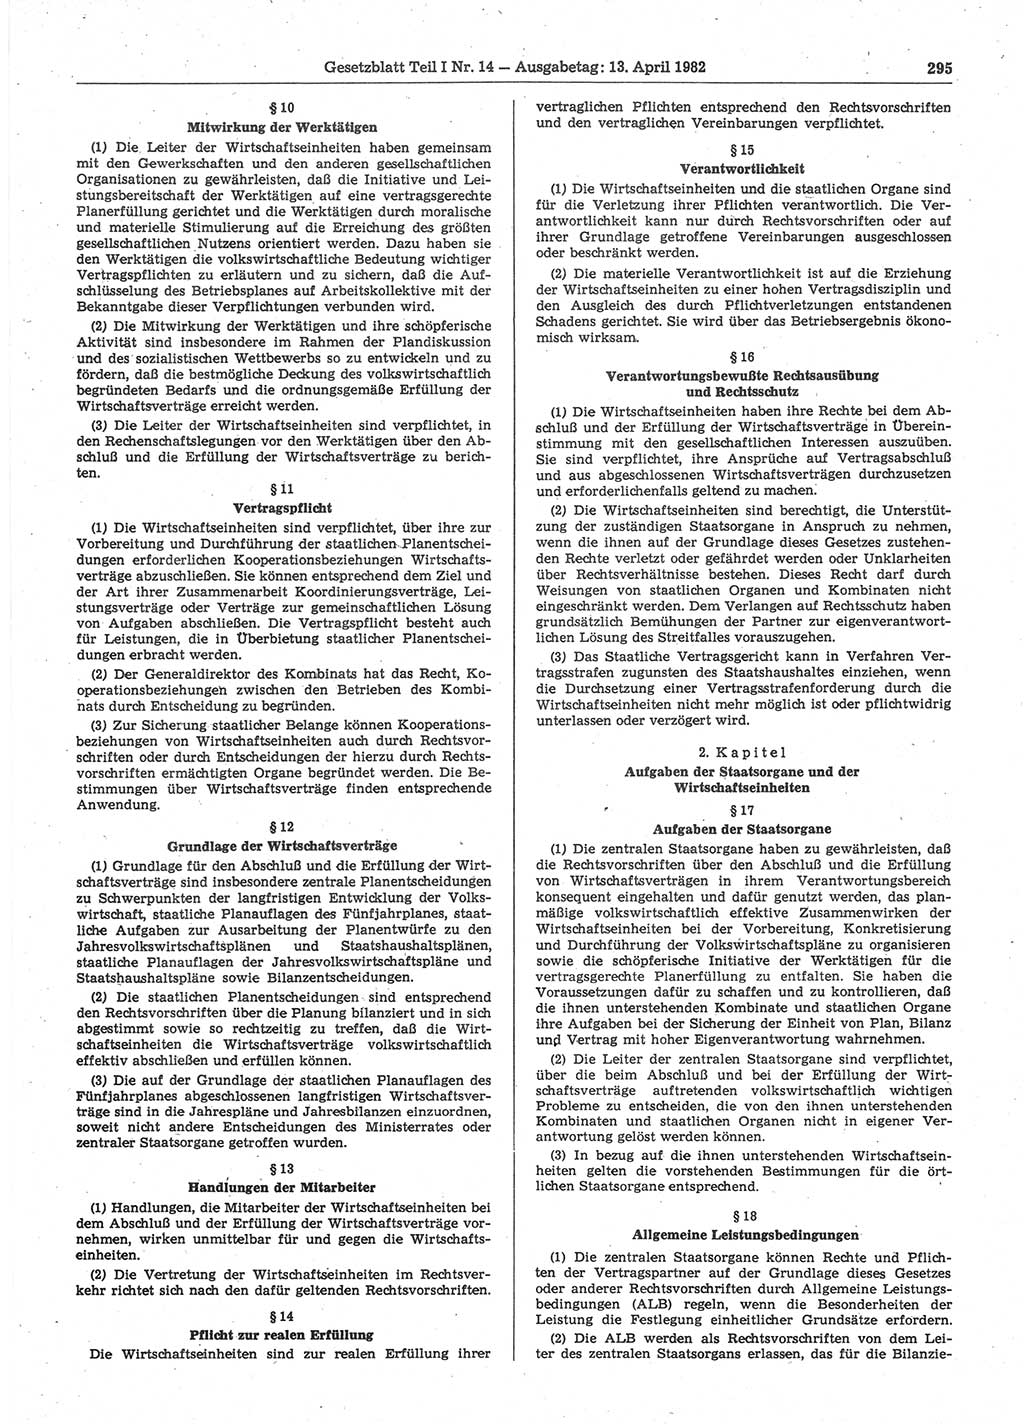 Gesetzblatt (GBl.) der Deutschen Demokratischen Republik (DDR) Teil Ⅰ 1982, Seite 295 (GBl. DDR Ⅰ 1982, S. 295)